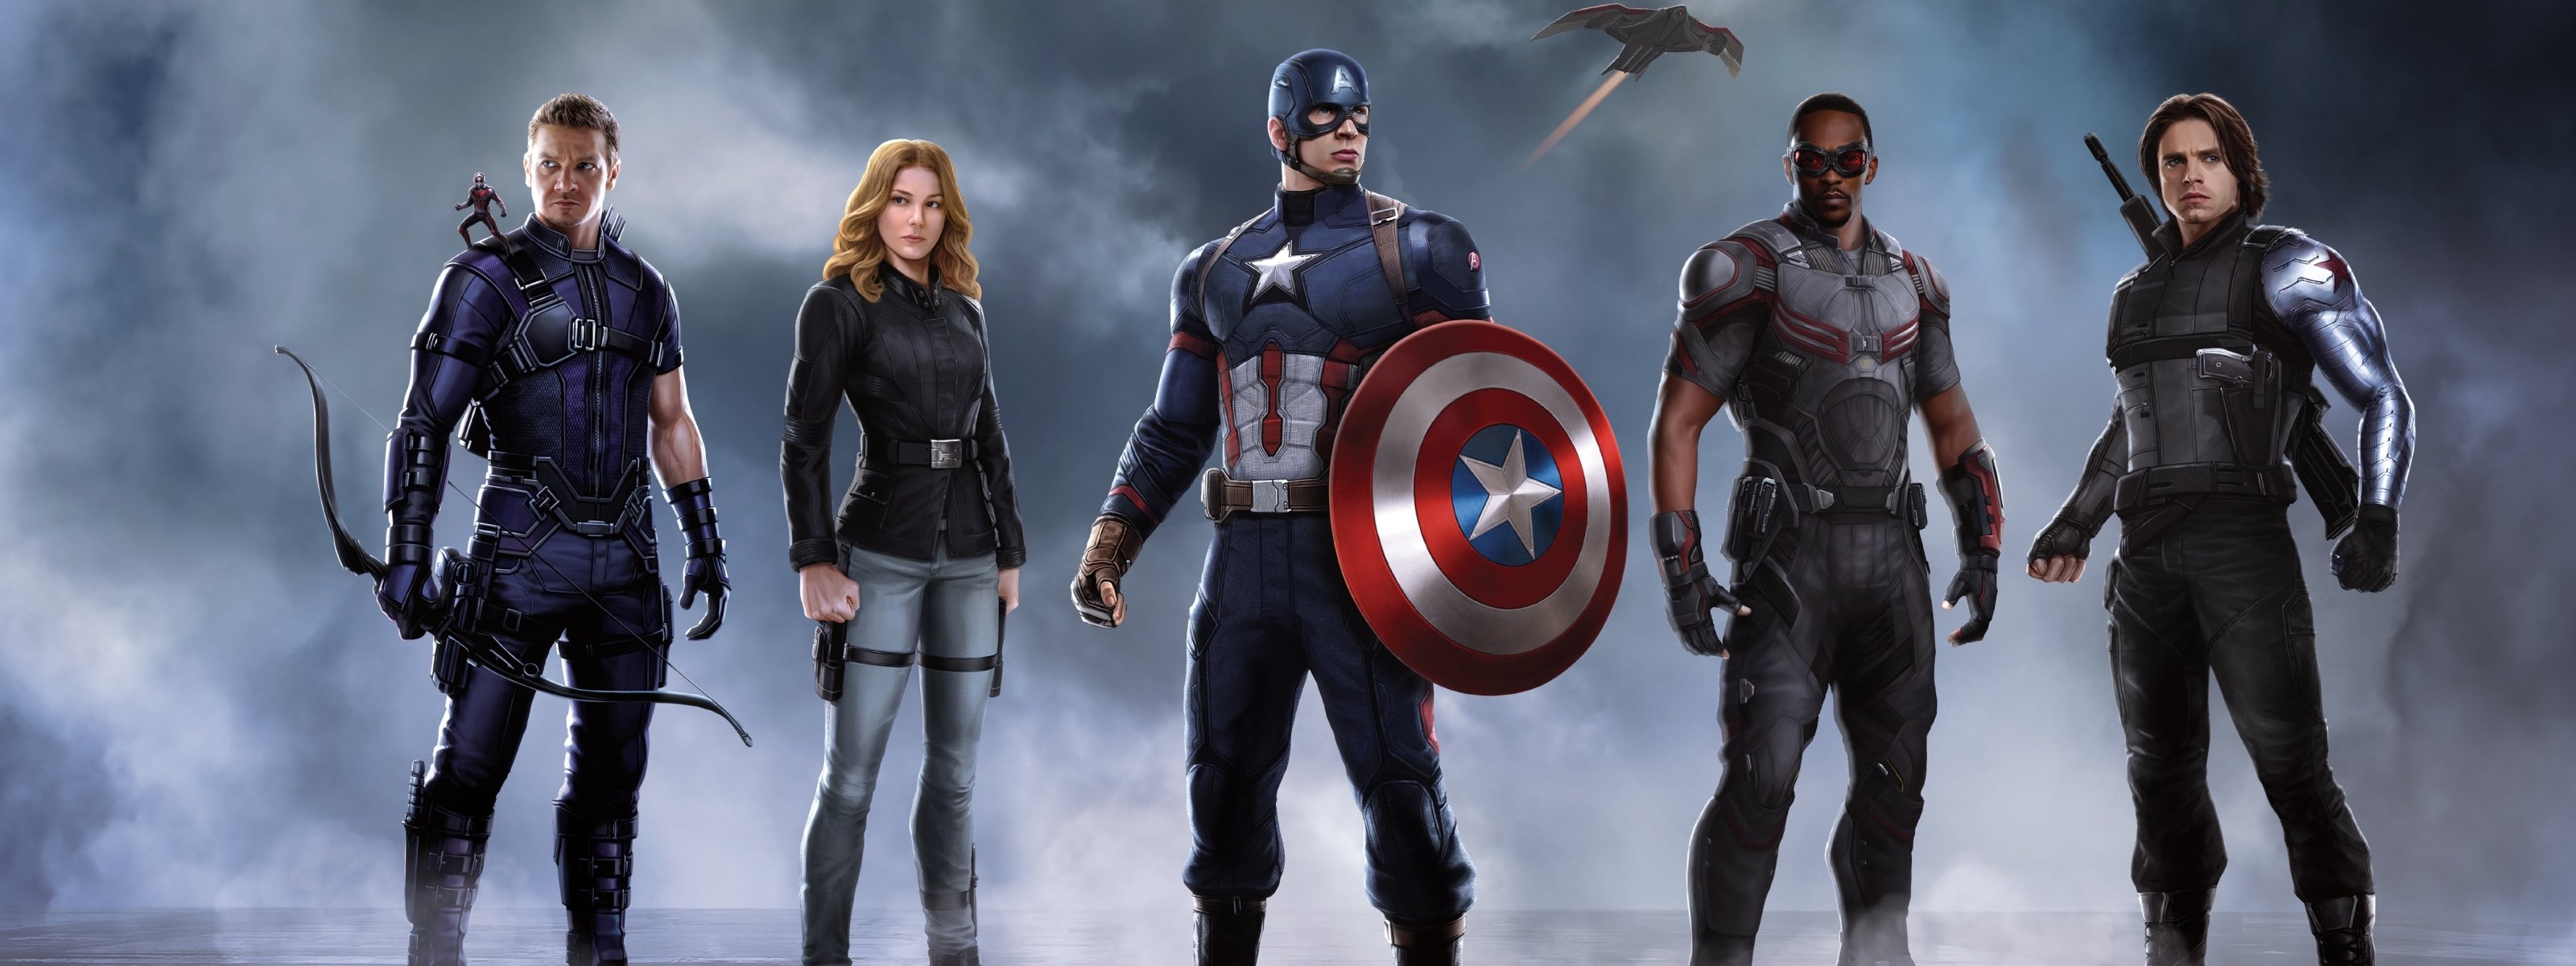 America 3. Первый мститель 3. Мстители три Противостояние. Captain America Civil War Captain Team. Последний мститель.